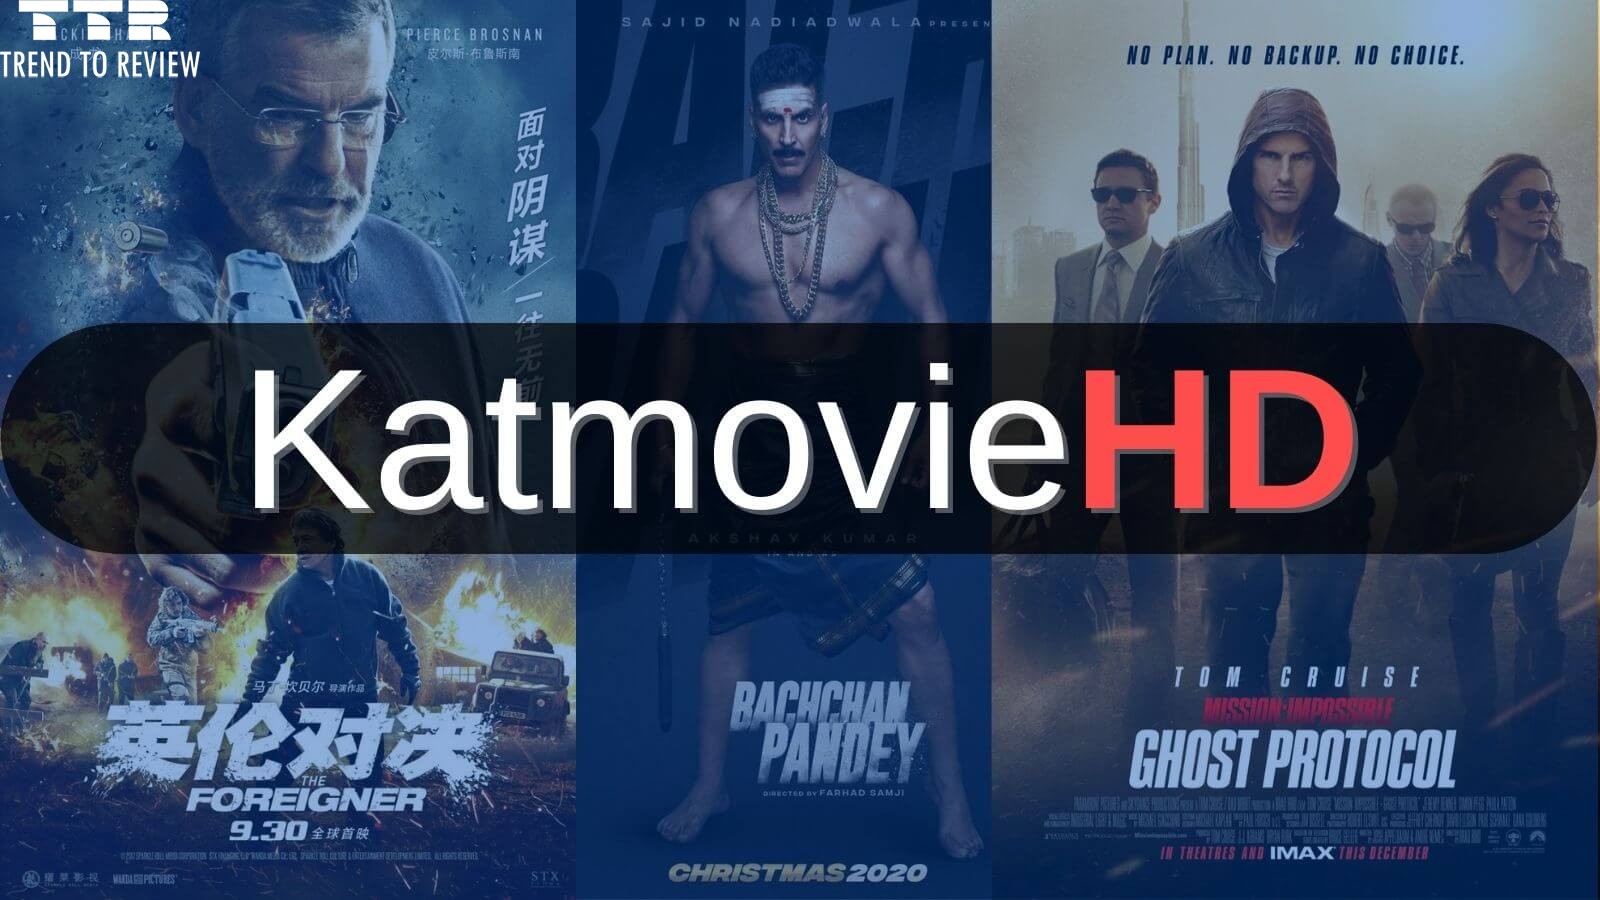 KatMovieHD – Download Bollywood, Hollywood, Tamil HD Movies